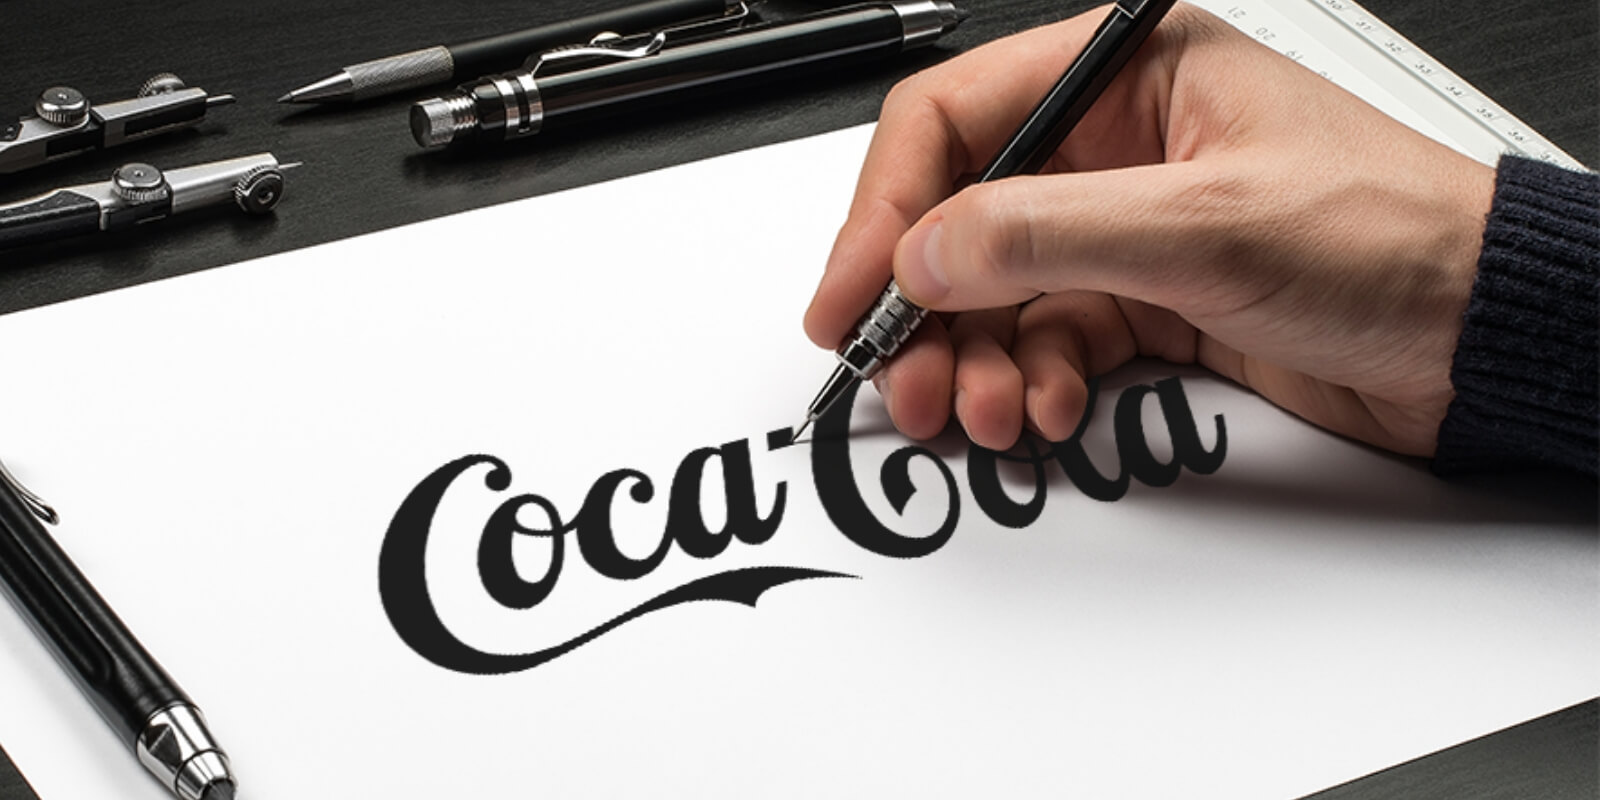 Coca-cola maker logo